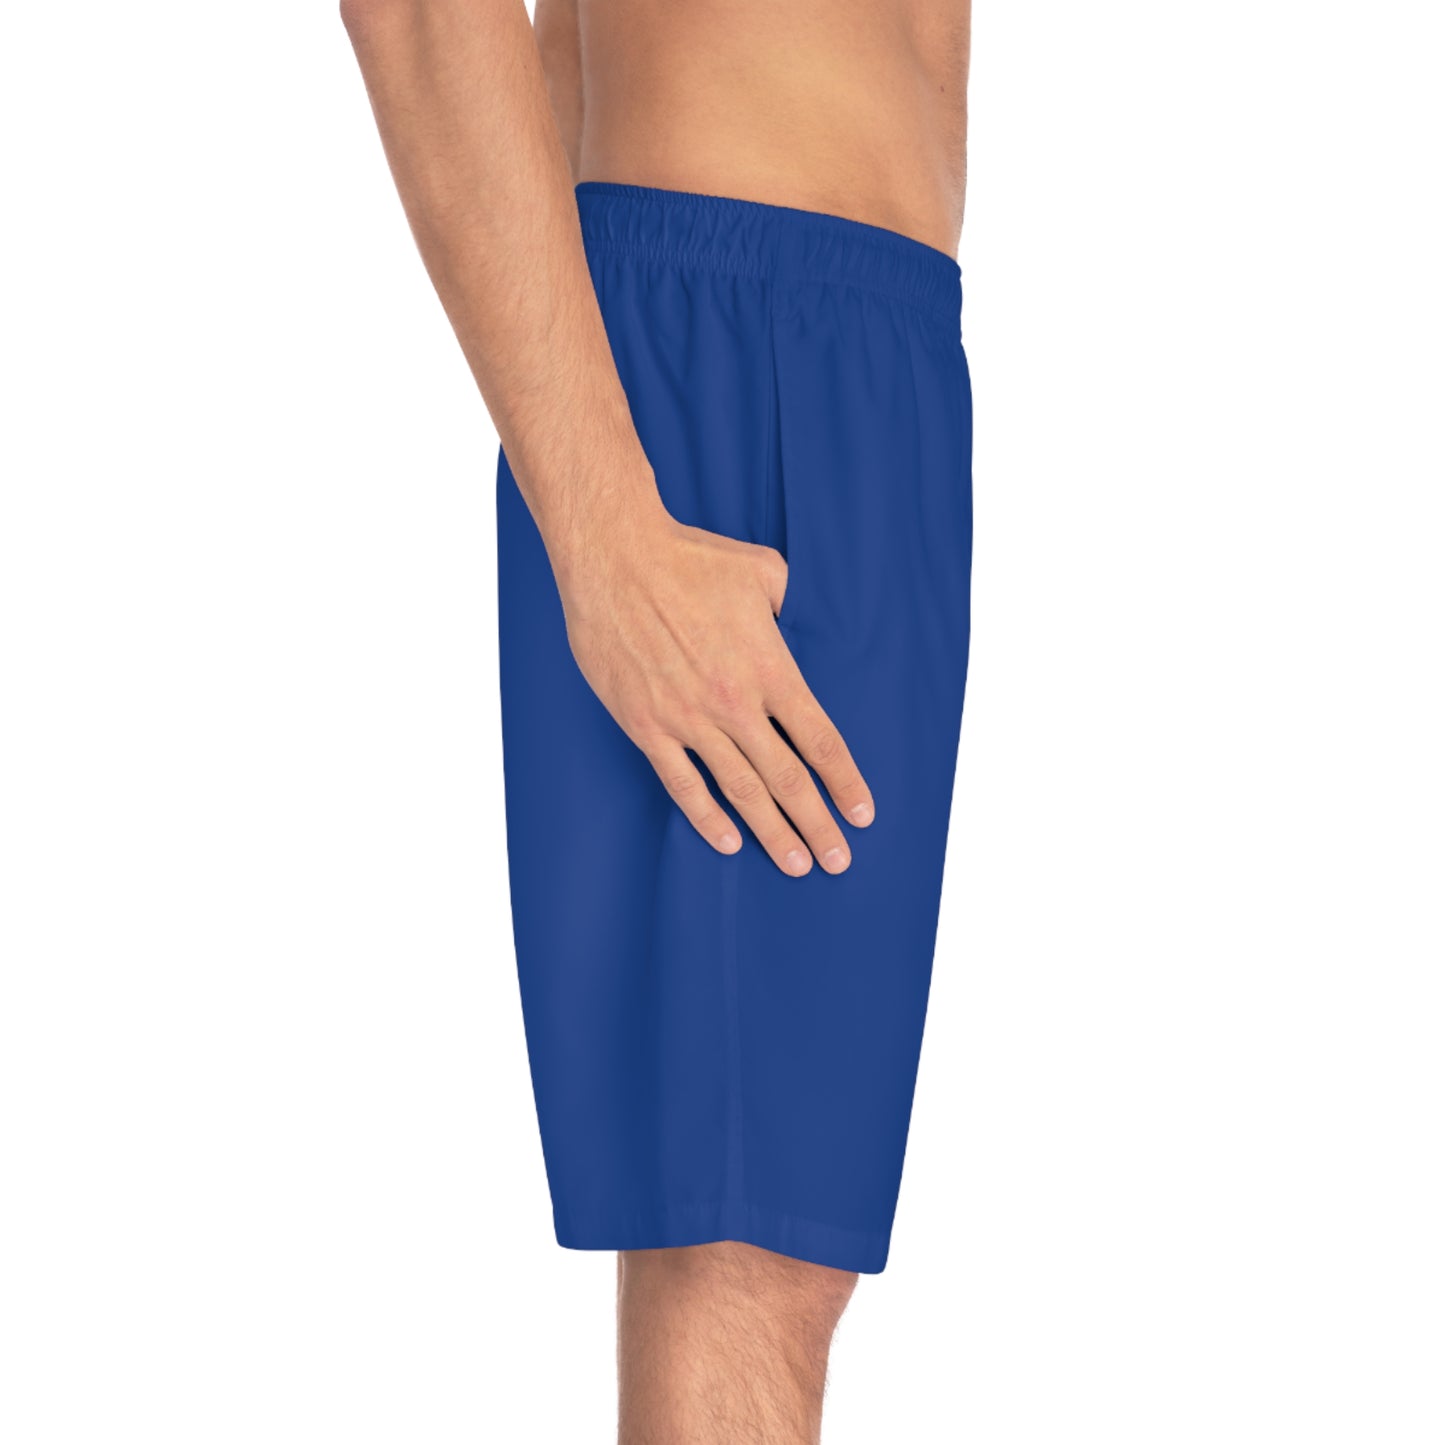 Blueberry Shorts